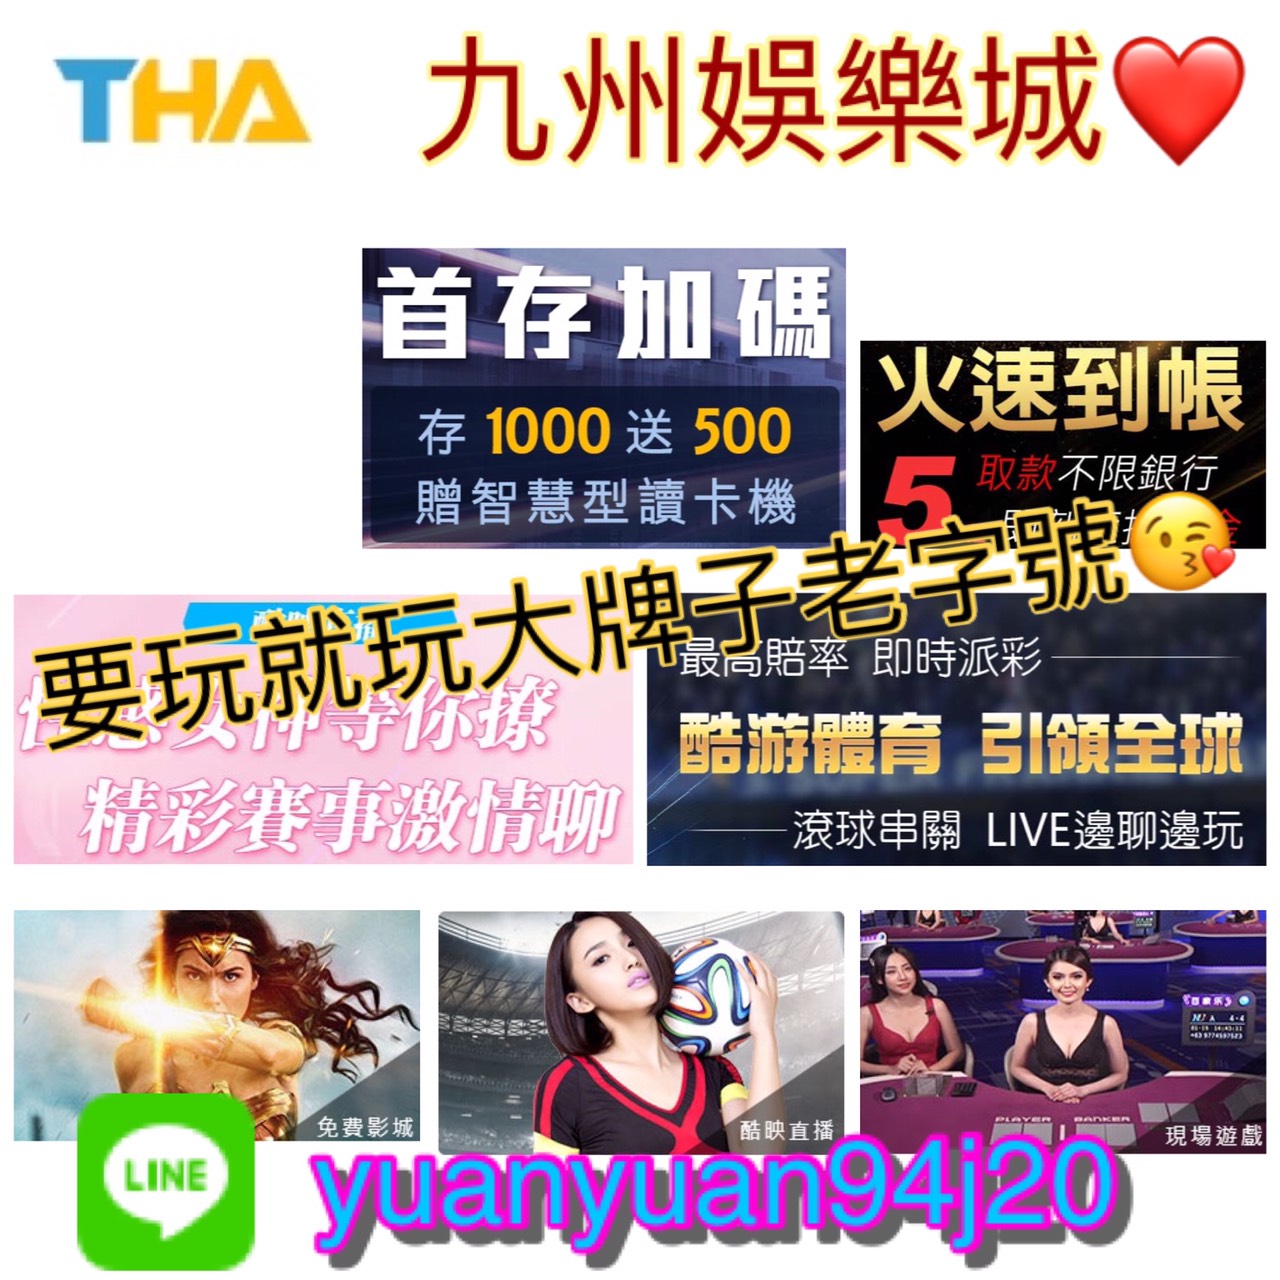 九牛線上百家樂娛樂城-超級推薦   THA九州娛樂城   台灣第一大平台